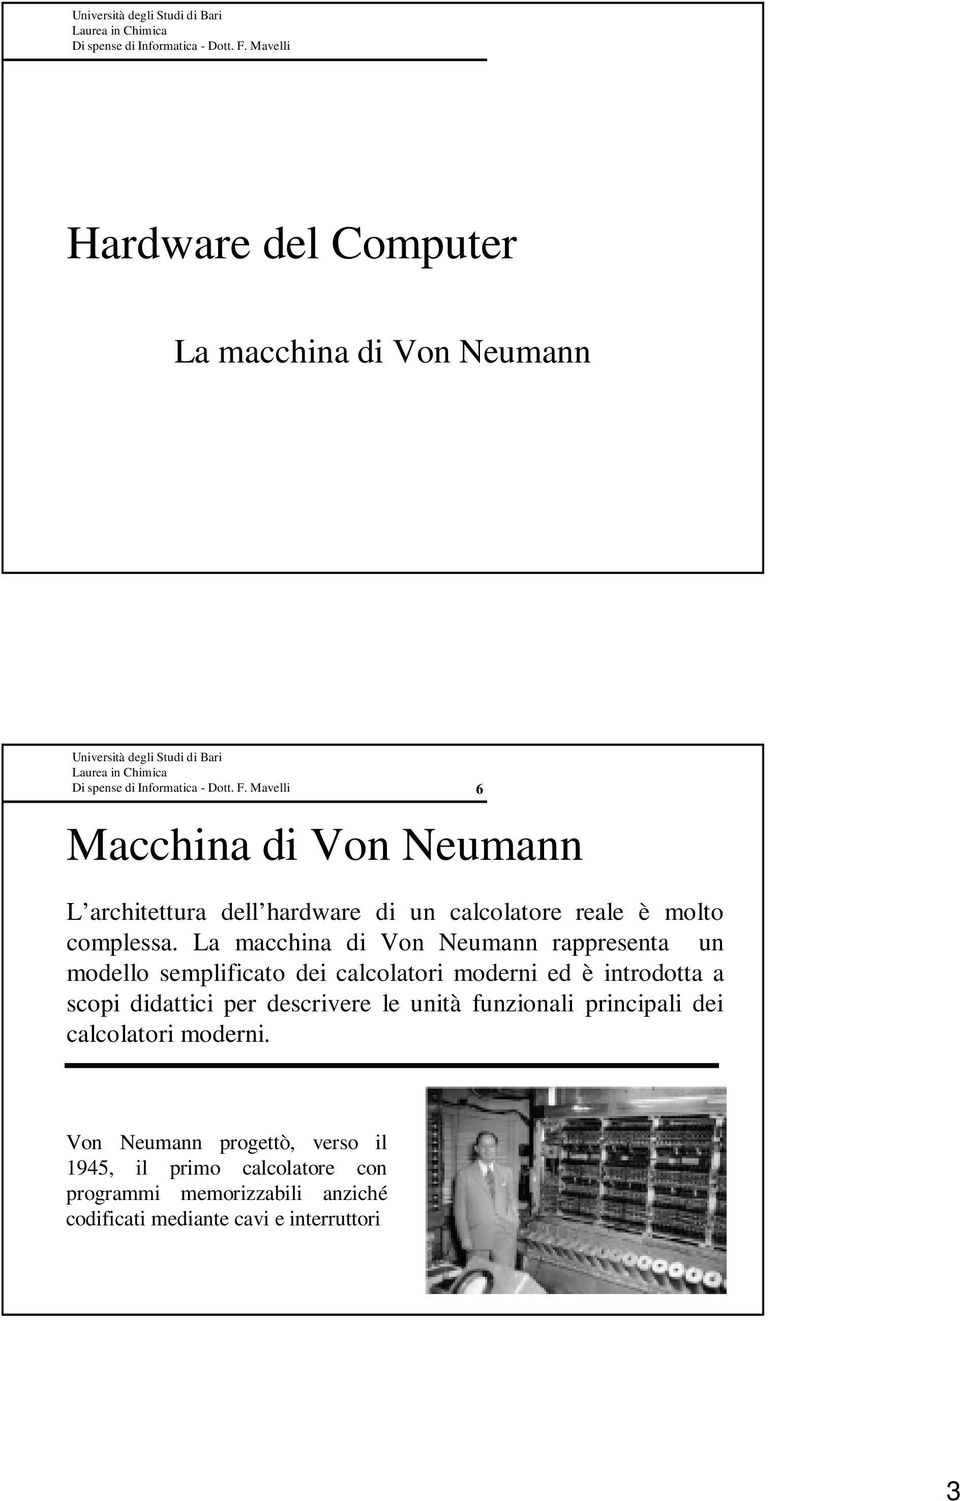 La macchina di Von Neumann rappresenta un modello semplificato dei calcolatori moderni ed è introdotta a scopi